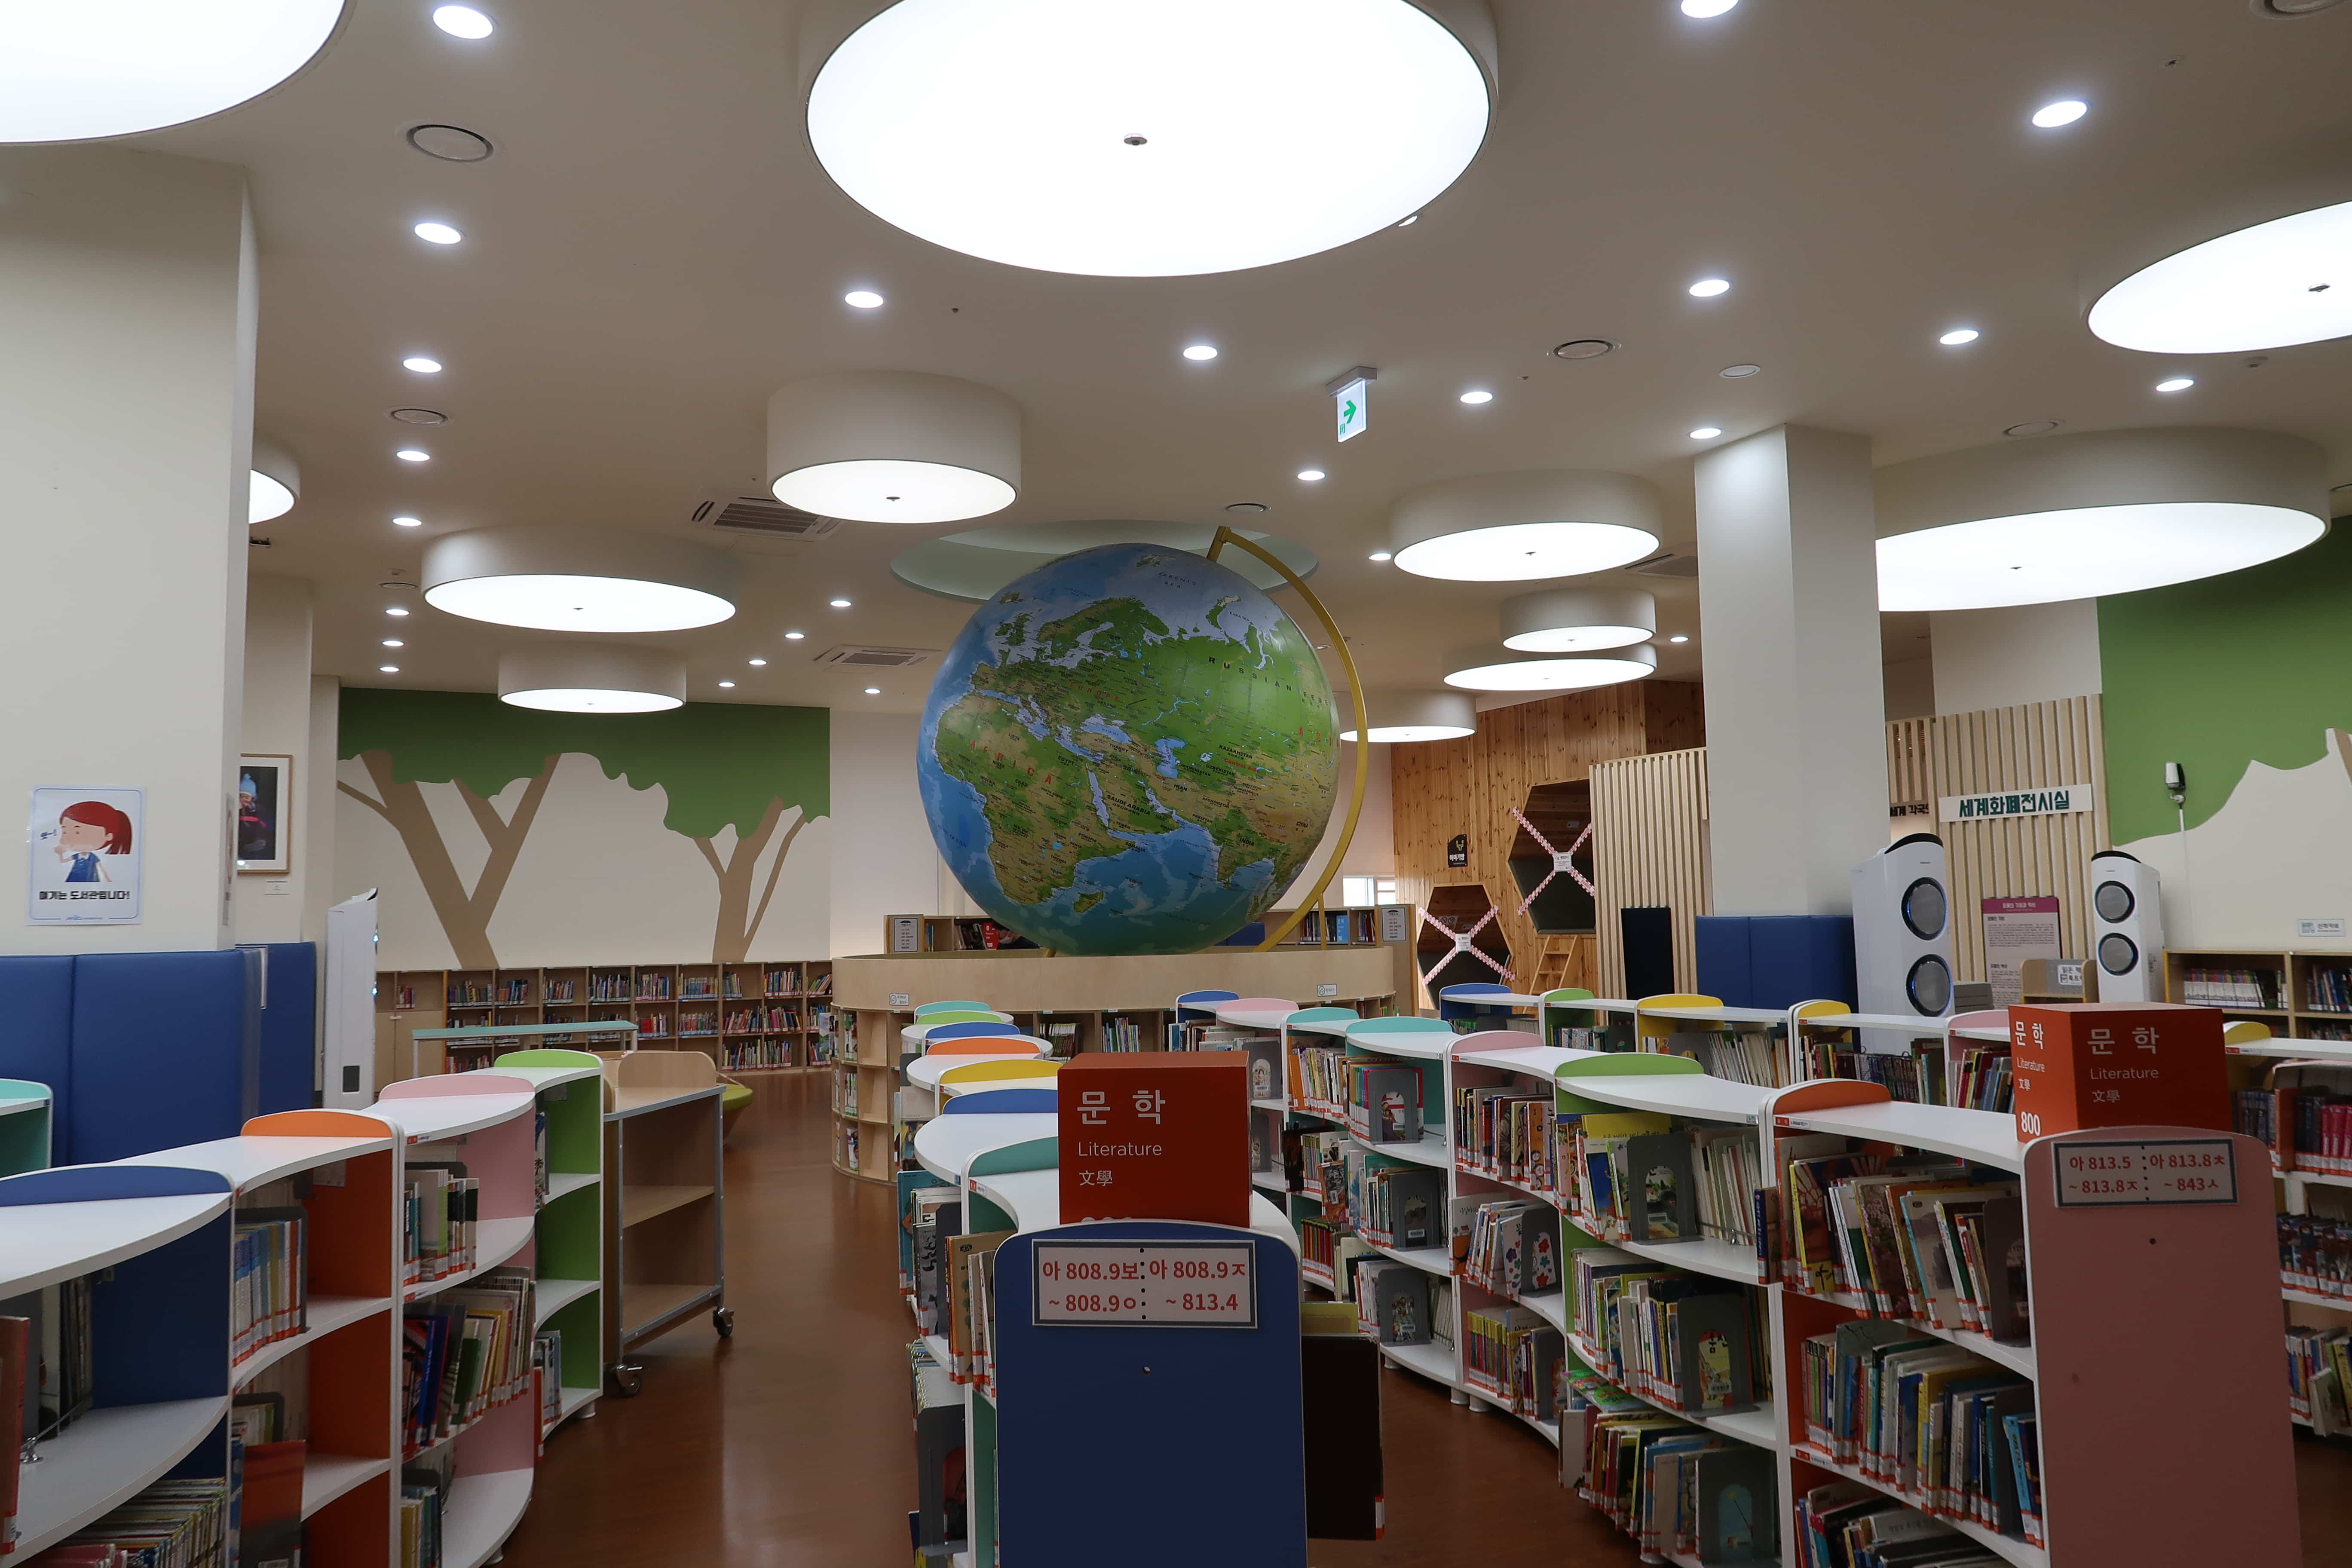 마포중앙도서관0 : 중앙에 큰 지구본이 있고 밝은 조명이 설치된 마포중앙도서관 어린이 열람실 전경